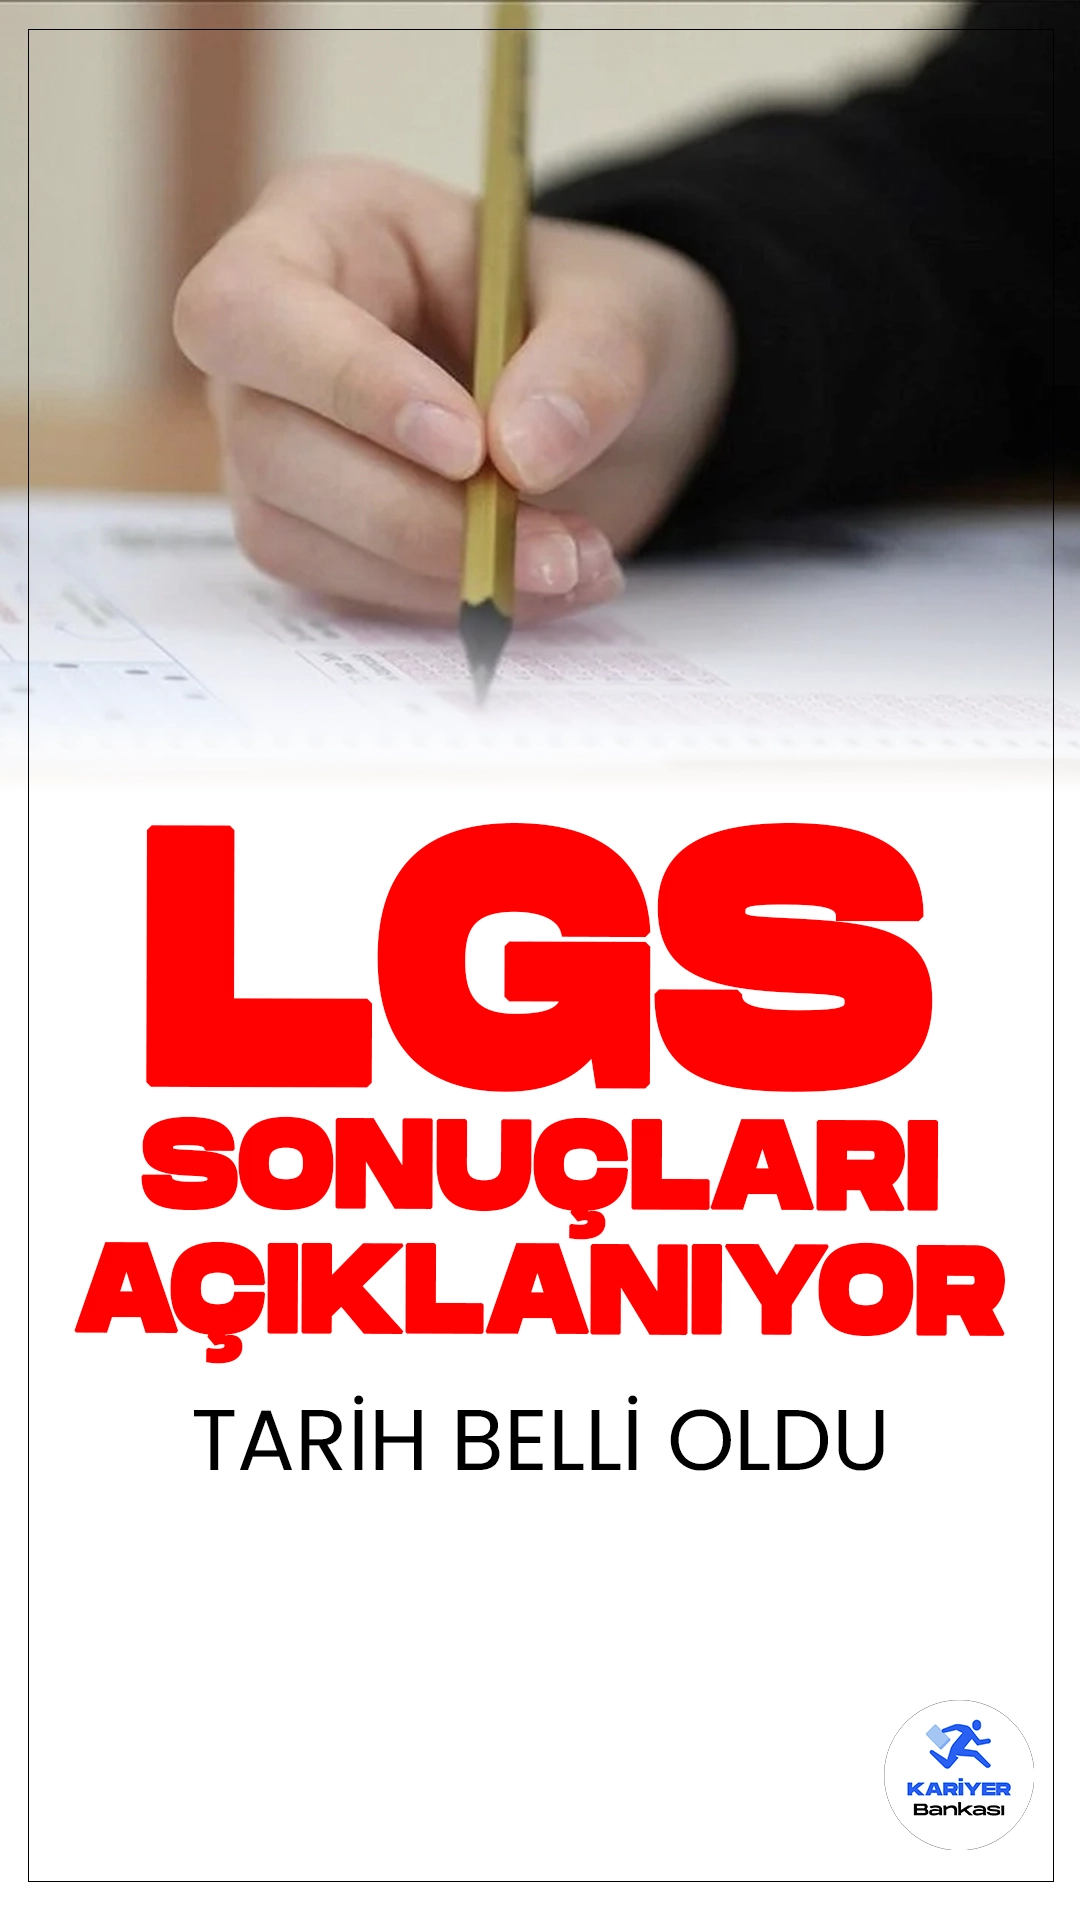 LGS Sonuçları Yarın Açıklanacak.Liselere Geçiş Sistemi (LGS) kapsamında merkezi sınavın sonuçları, 28 Haziran Cuma günü açıklanacak.